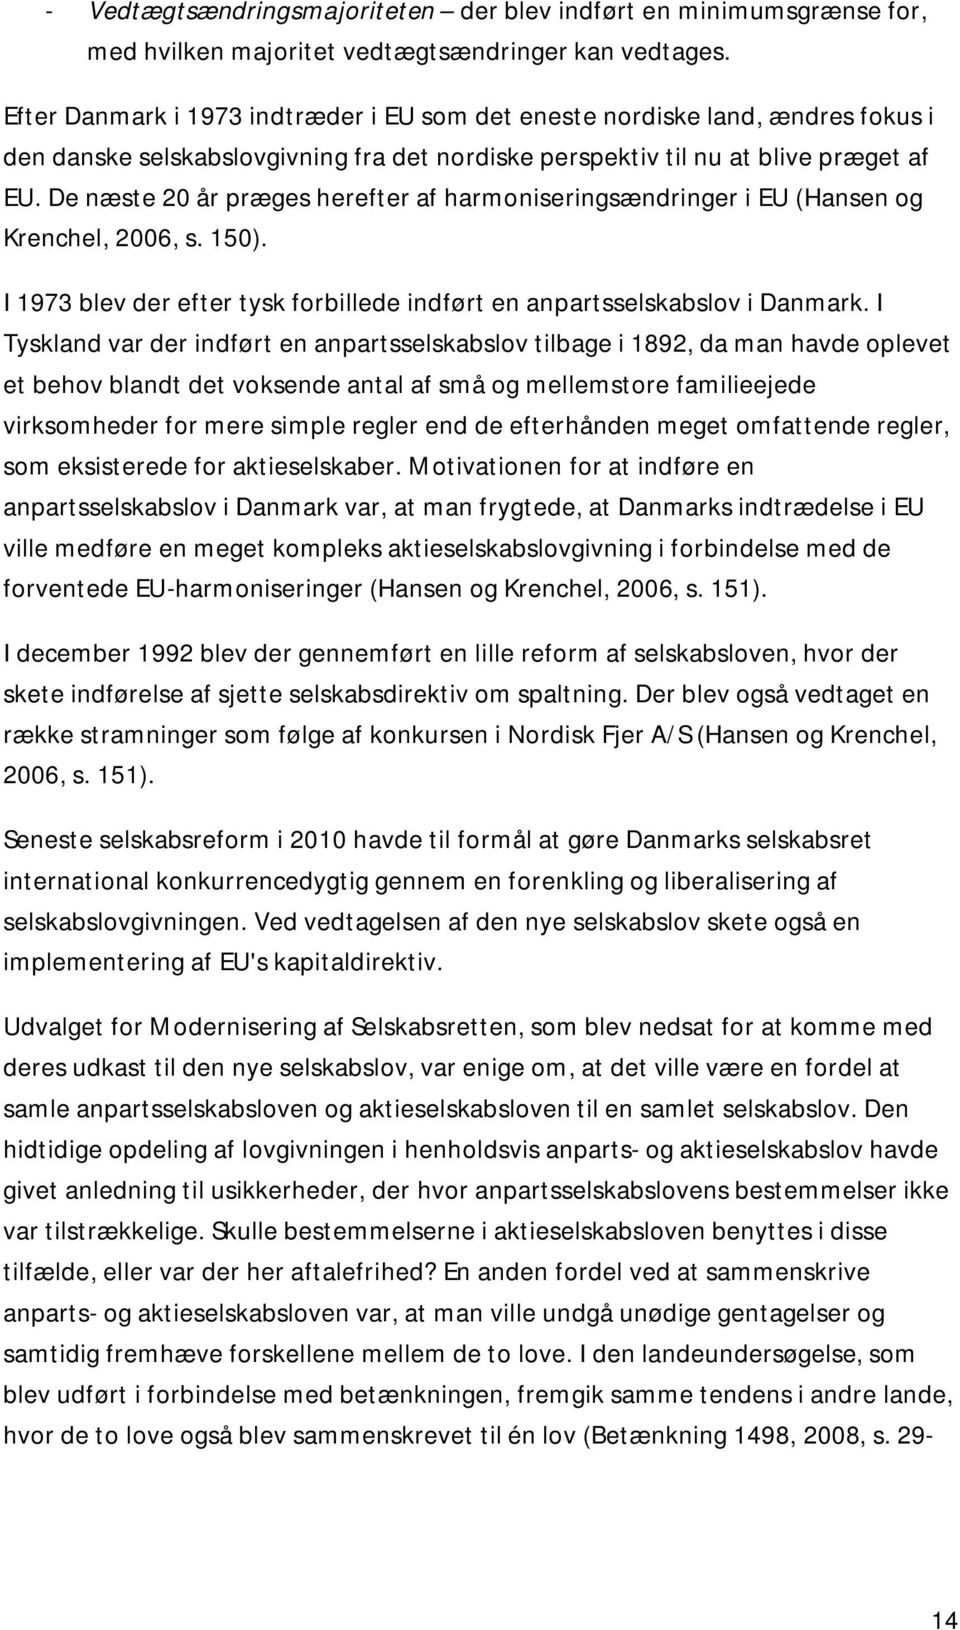 De næste 20 år præges herefter af harmoniseringsændringer i EU (Hansen og Krenchel, 2006, s. 150). I 1973 blev der efter tysk forbillede indført en anpartsselskabslov i Danmark.